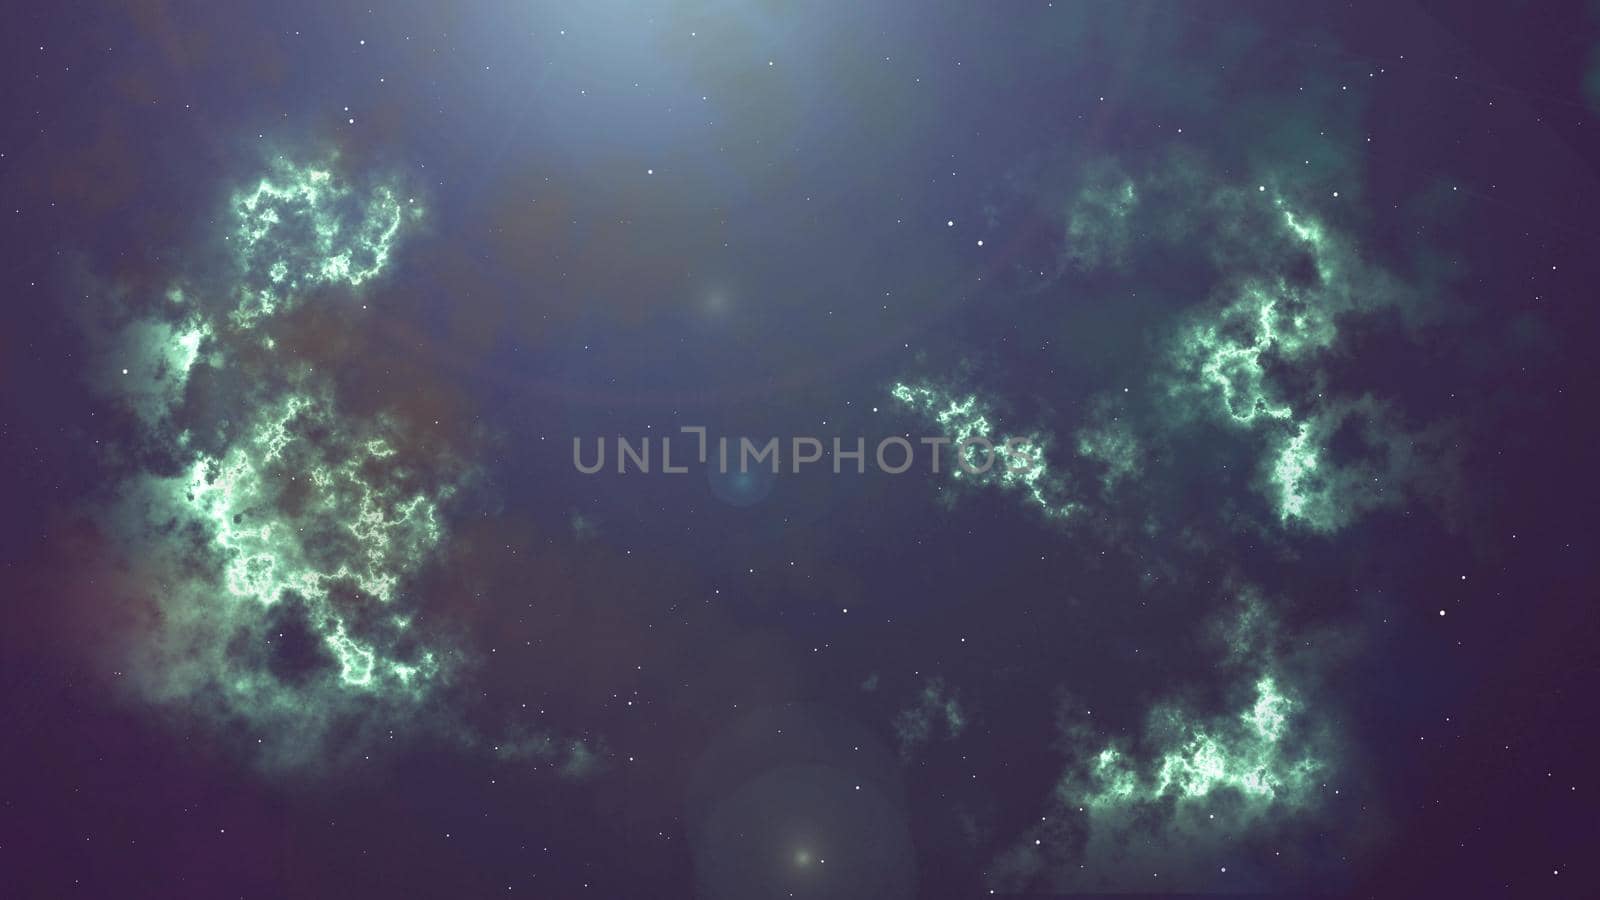 Illustration of glowing flicker nebula and stars by Chudakov